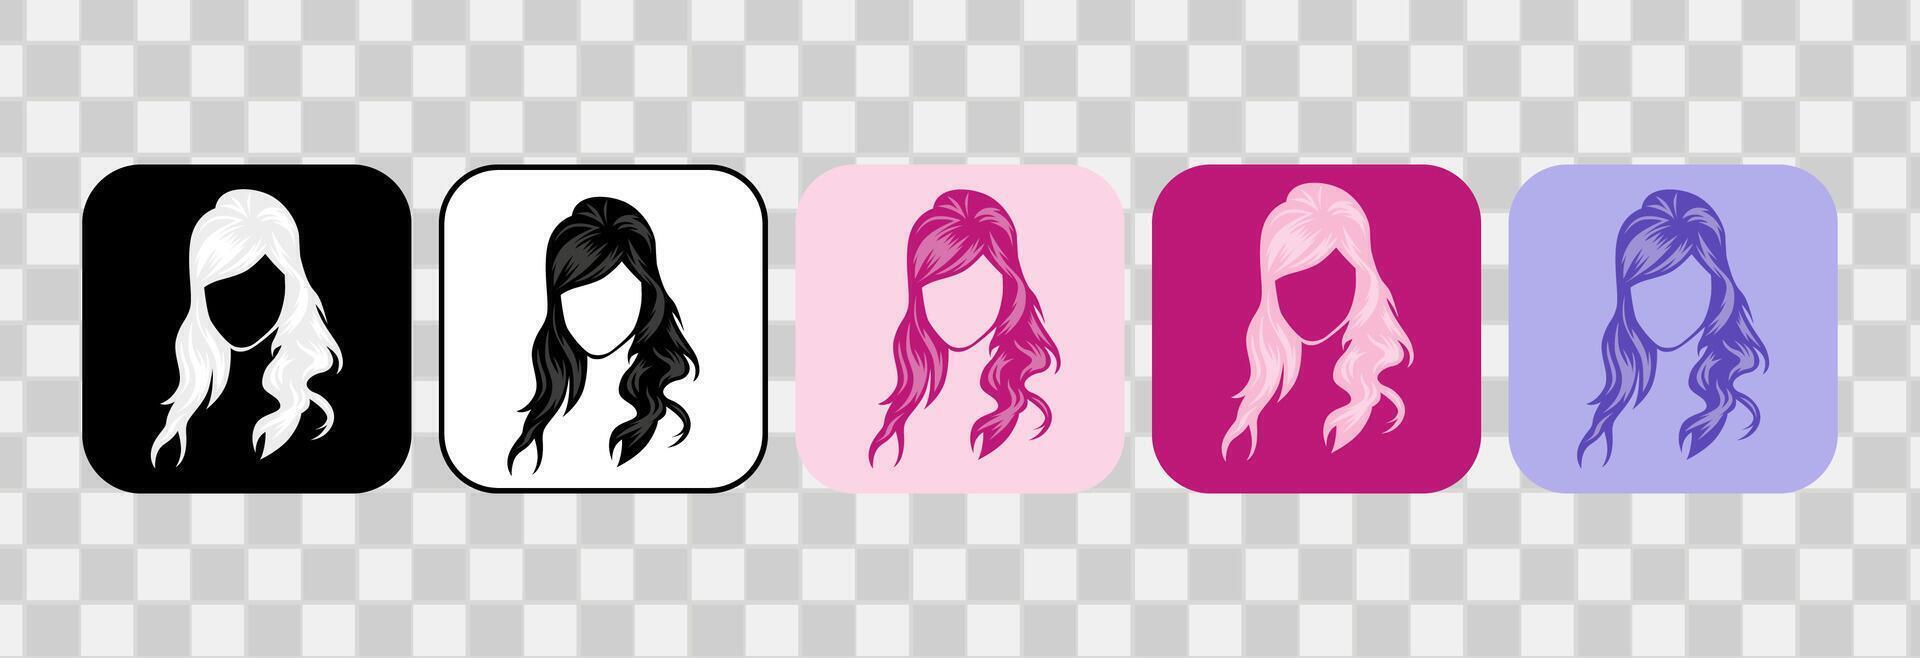 uppsättning av kvinnor hår ikoner. silhuett ritad för hand översikt. för logotyp, klämma konst, symbol, klistermärke, eller webb design. 600 px x 600 px rektangulär ikon, vektor platt illustration.